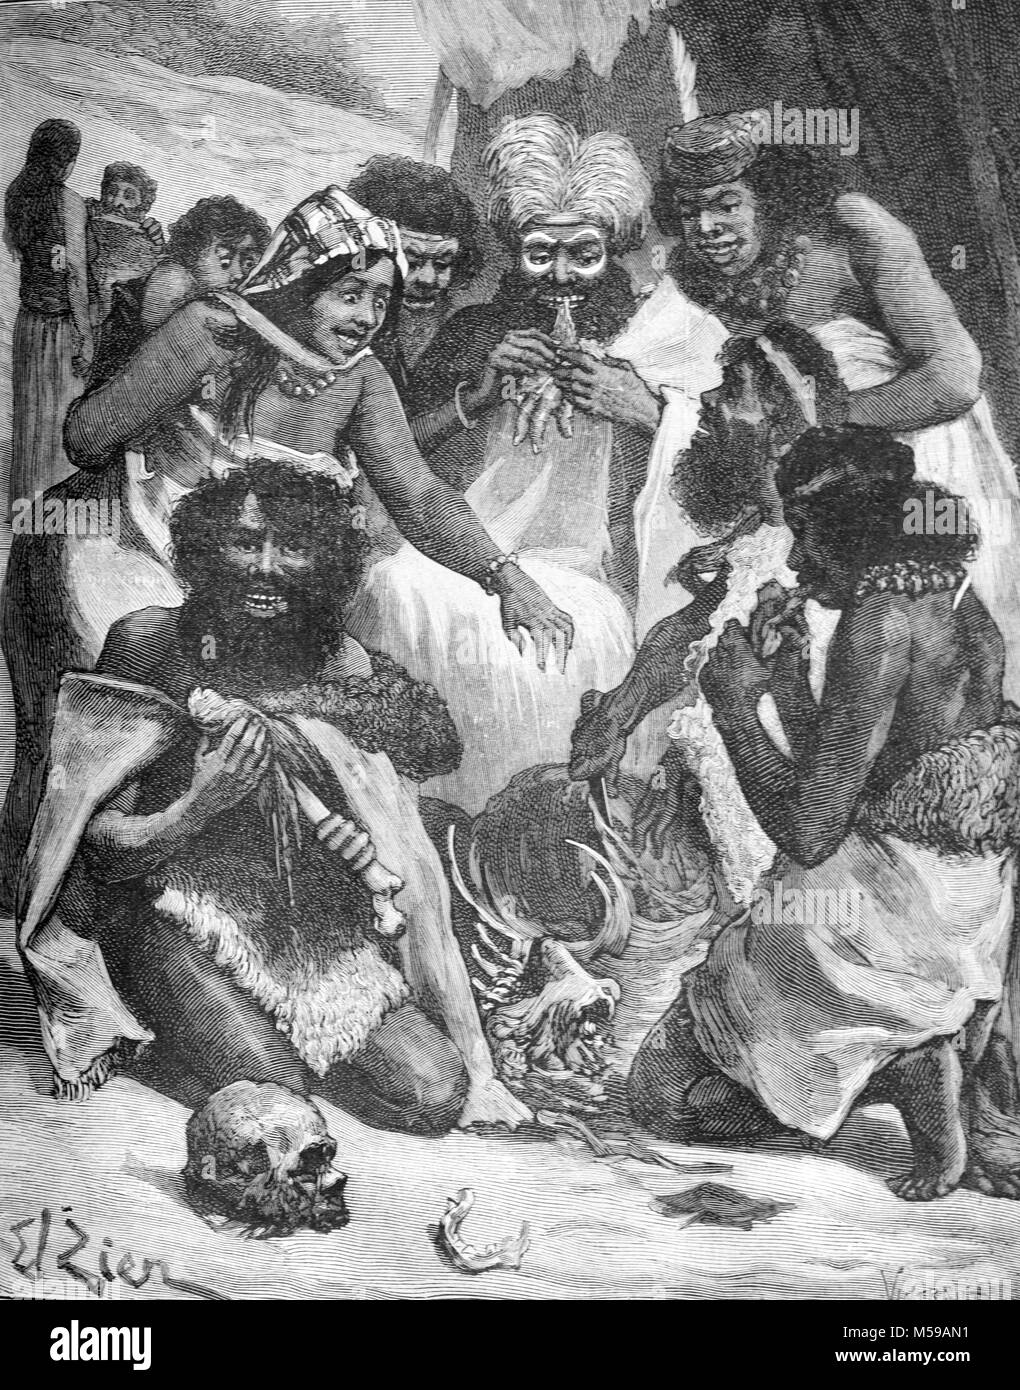 Les populations aborigènes ou autochtones présentés comme des cannibales dans le Queensland en Australie (gravure, 1889) Banque D'Images